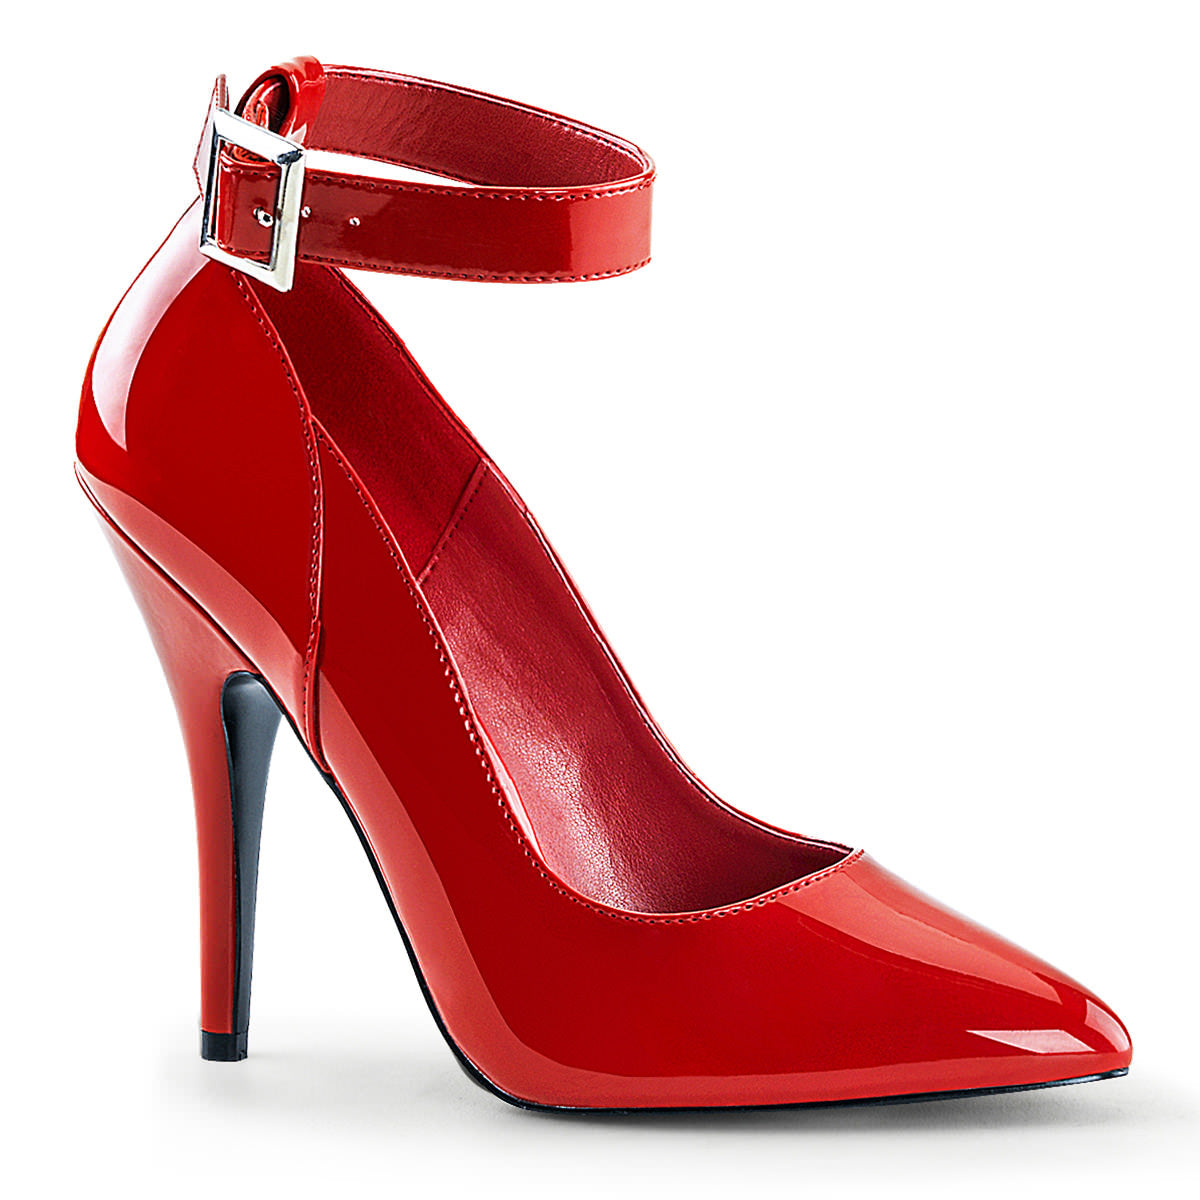 5 Inch Heel SEDUCE-431 Red Pat Plus Size Ankle Strap Pump – Shoecup.com